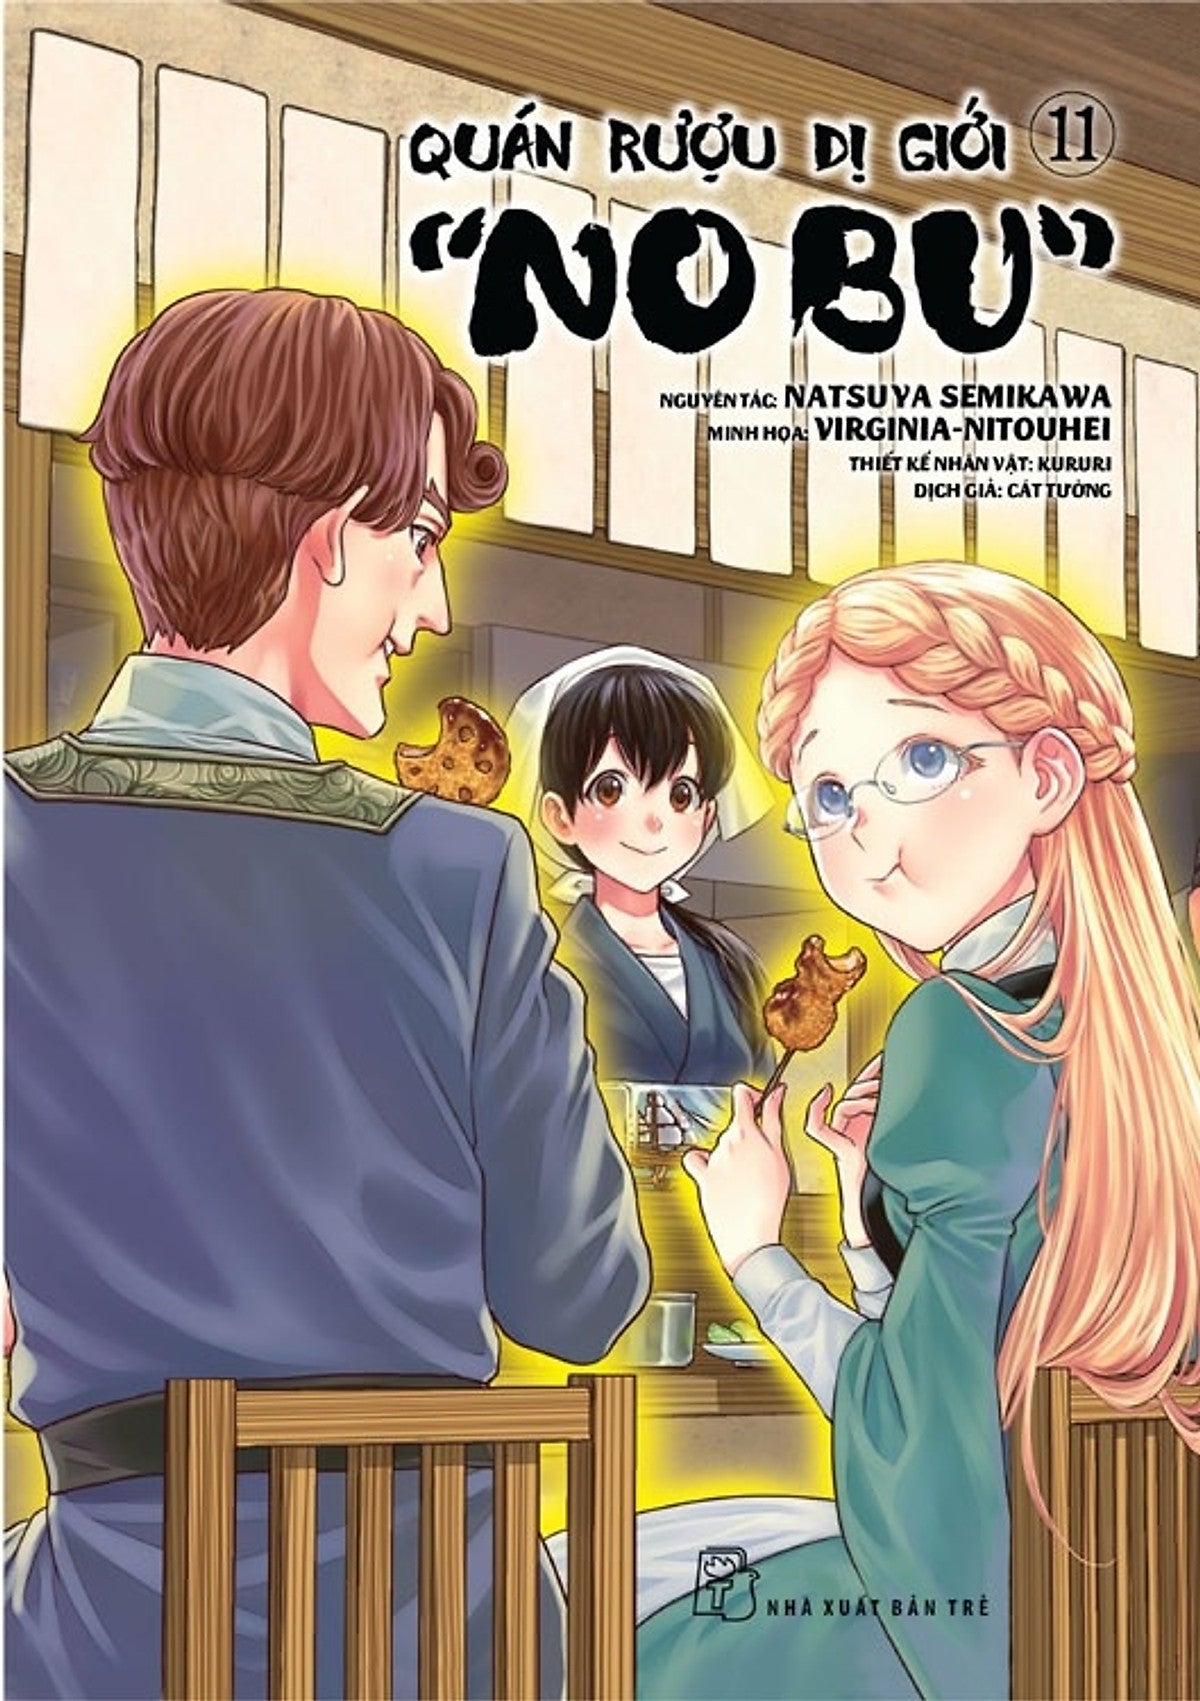 Quán Rượu Dị Giới "Nobu" - Full Tập 1-11